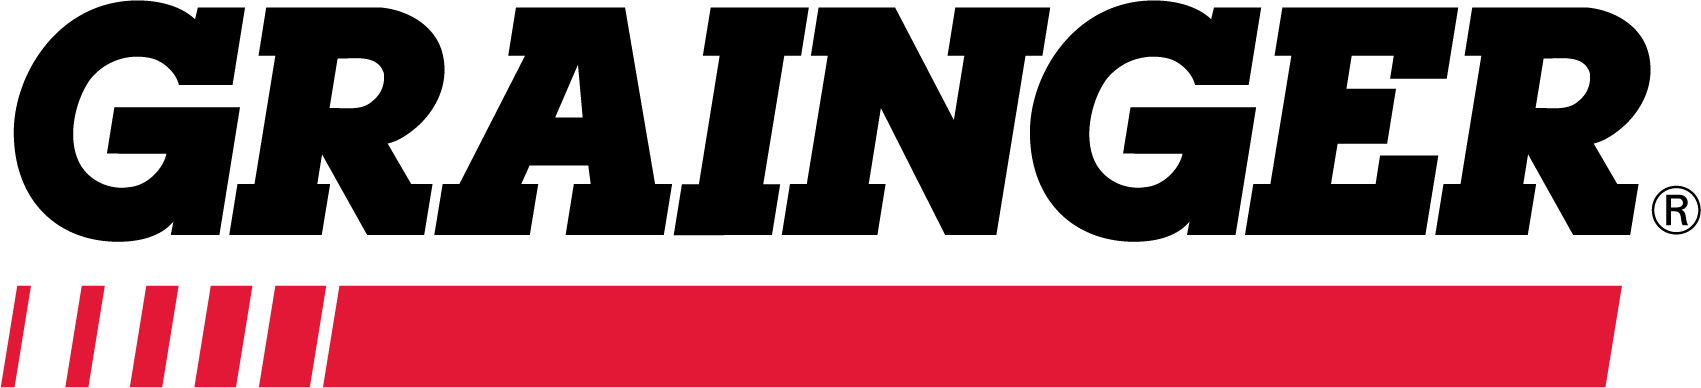 Grainger Logo (Black Text & Red Bar).png